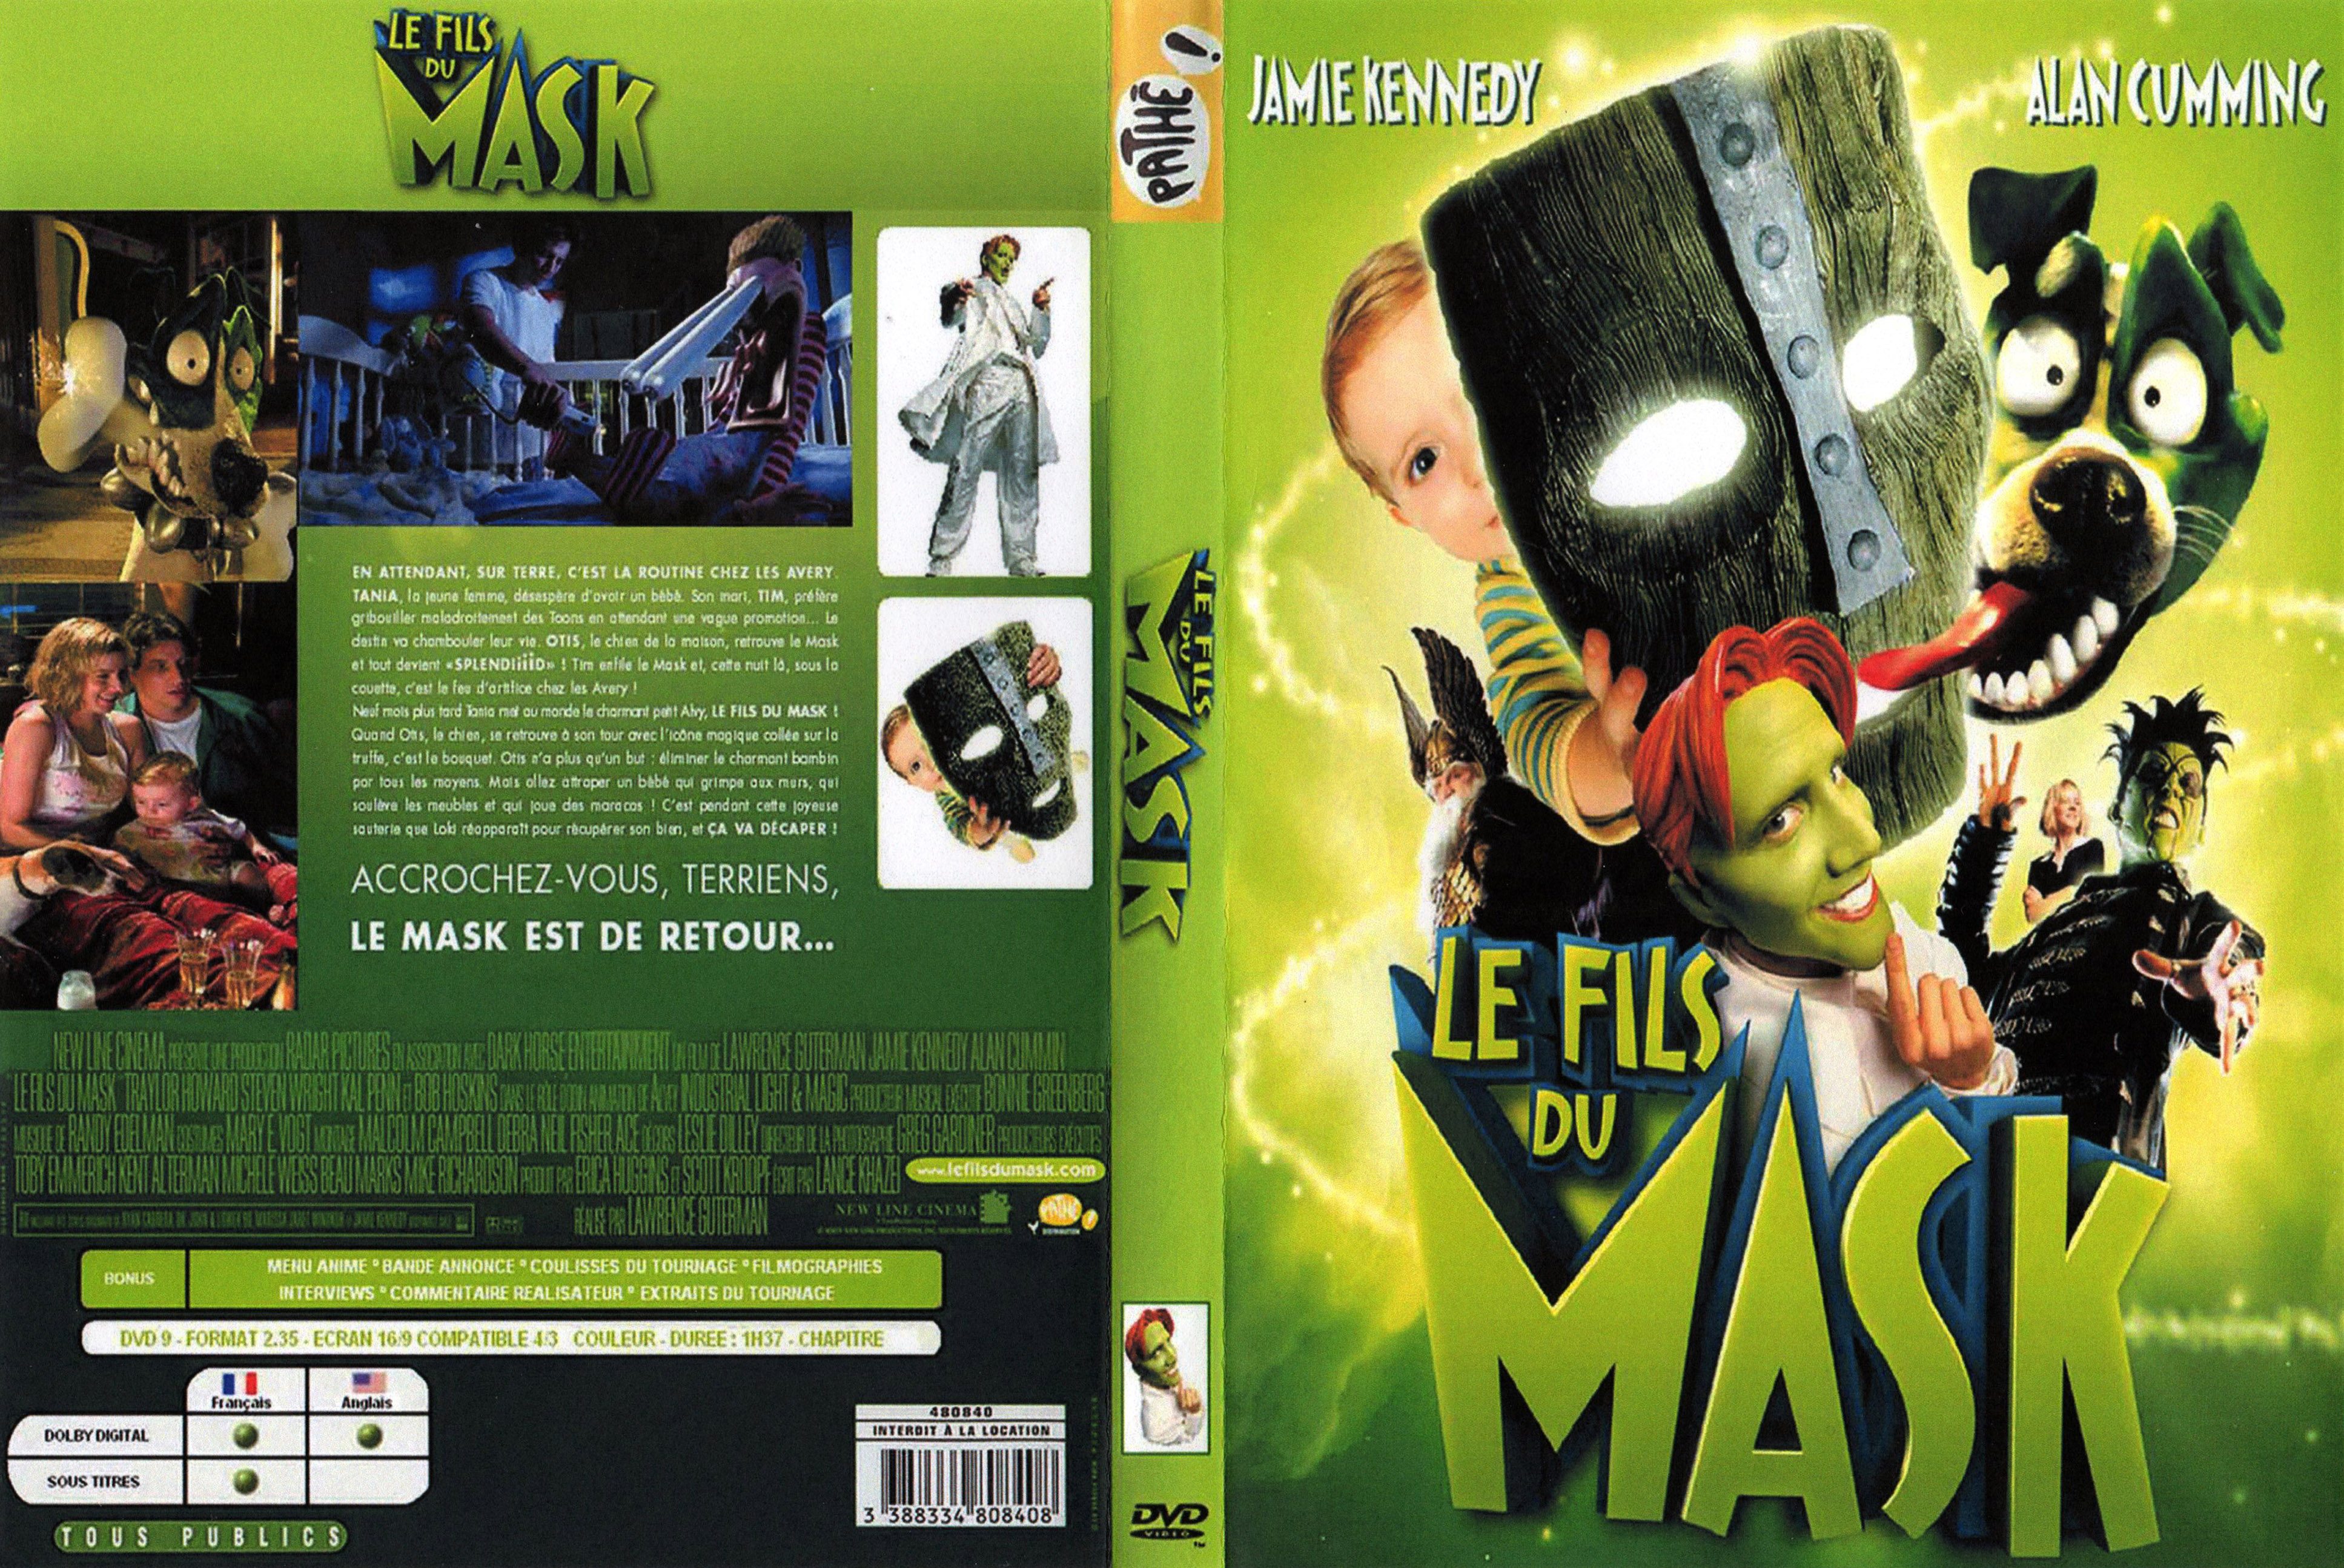 Jaquette DVD Le fils du Mask v2